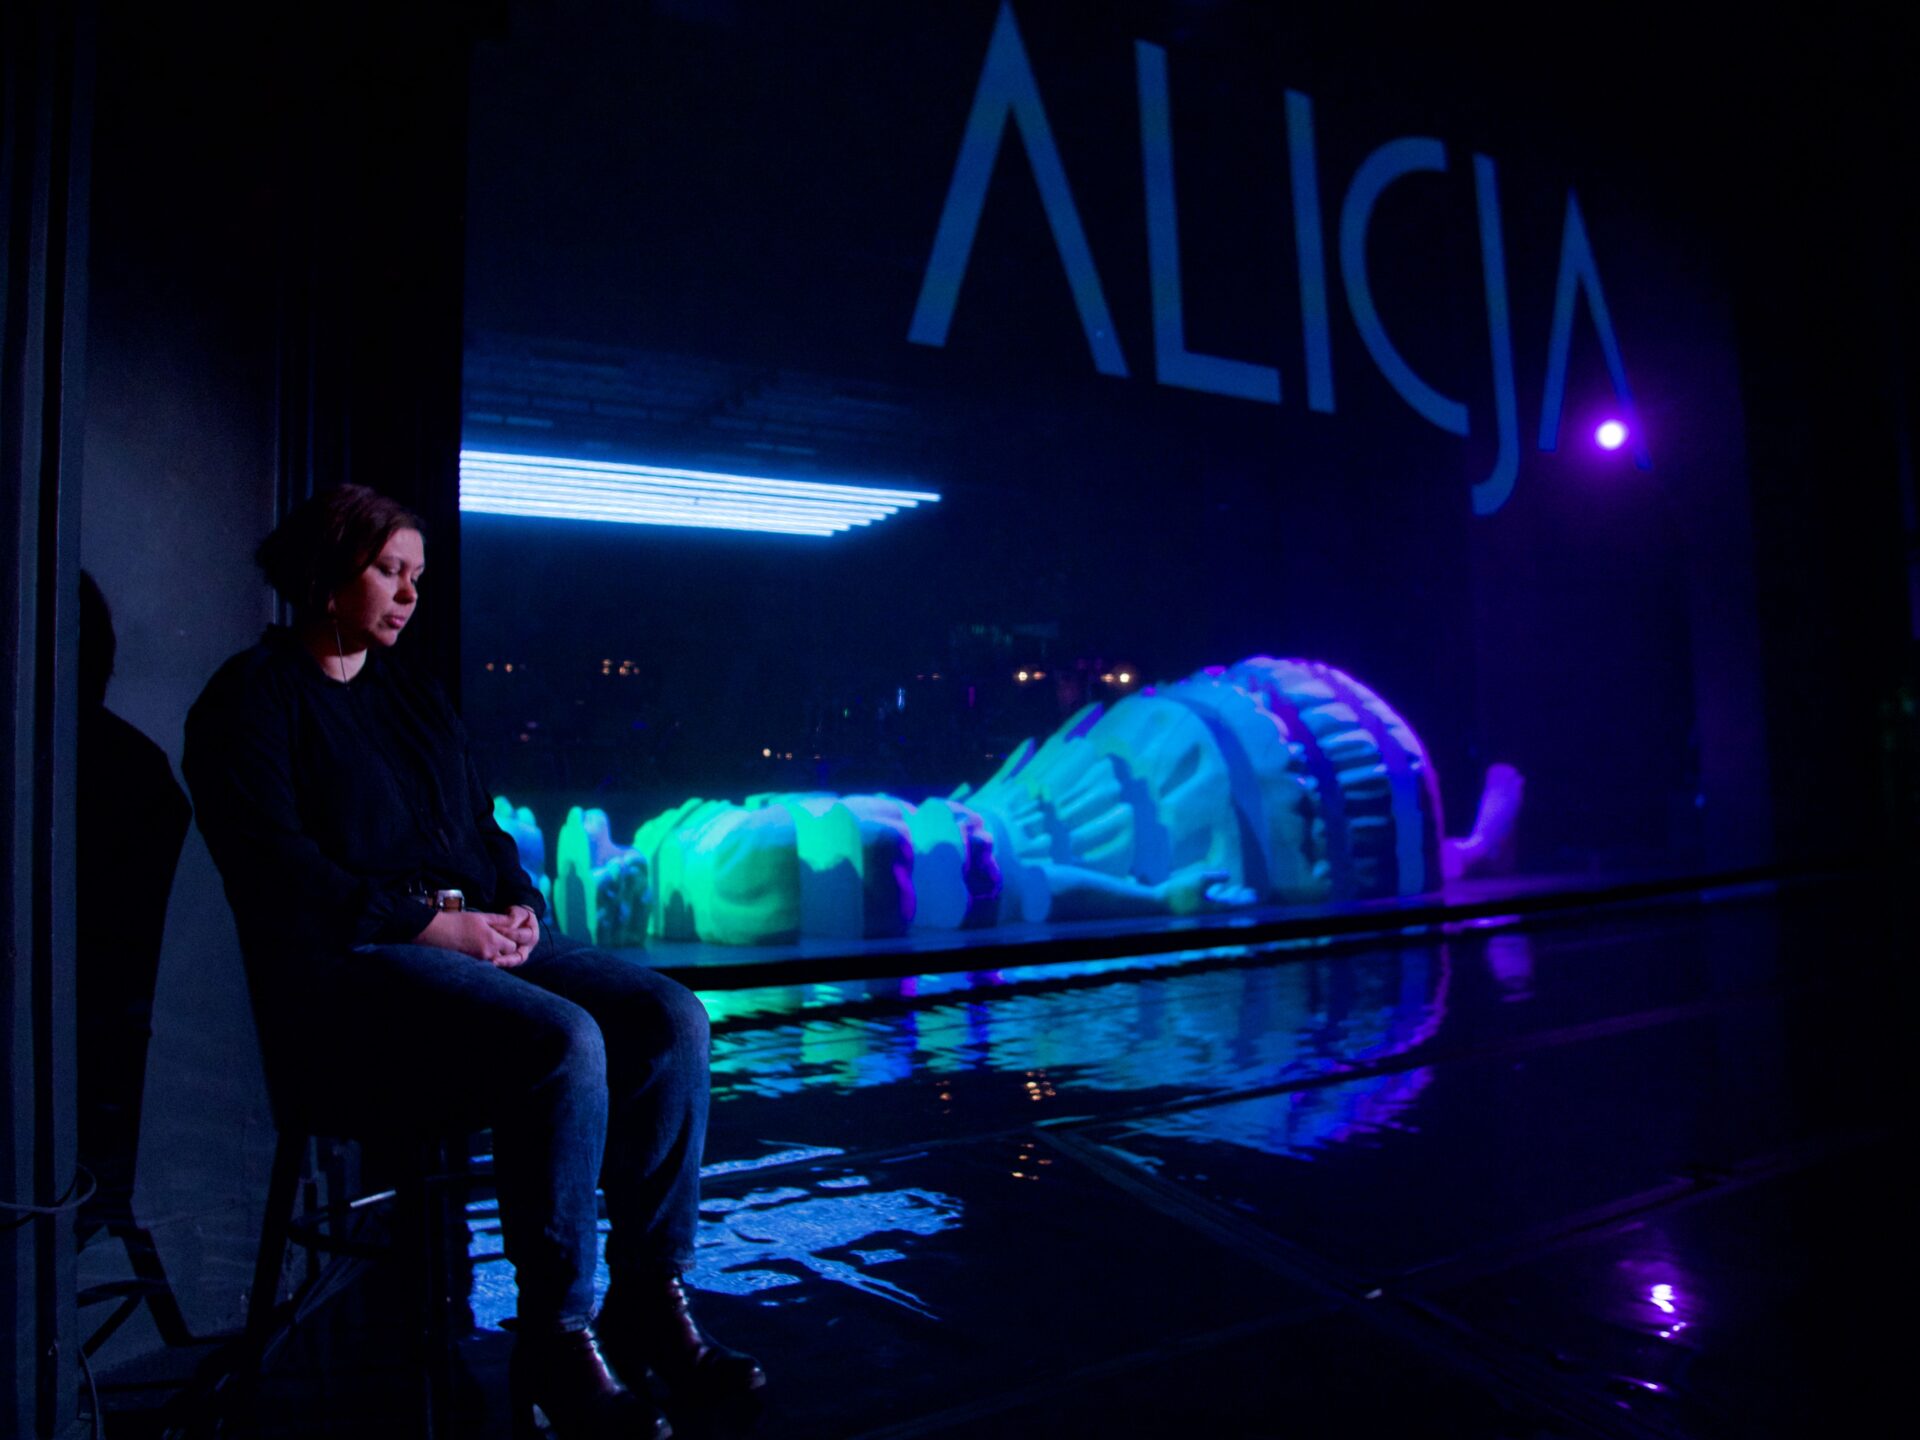 Scena teatralna. Tłumaczka Ela Resler siedzi na krześle. W tle dekoracje i wielki napis Alicja.